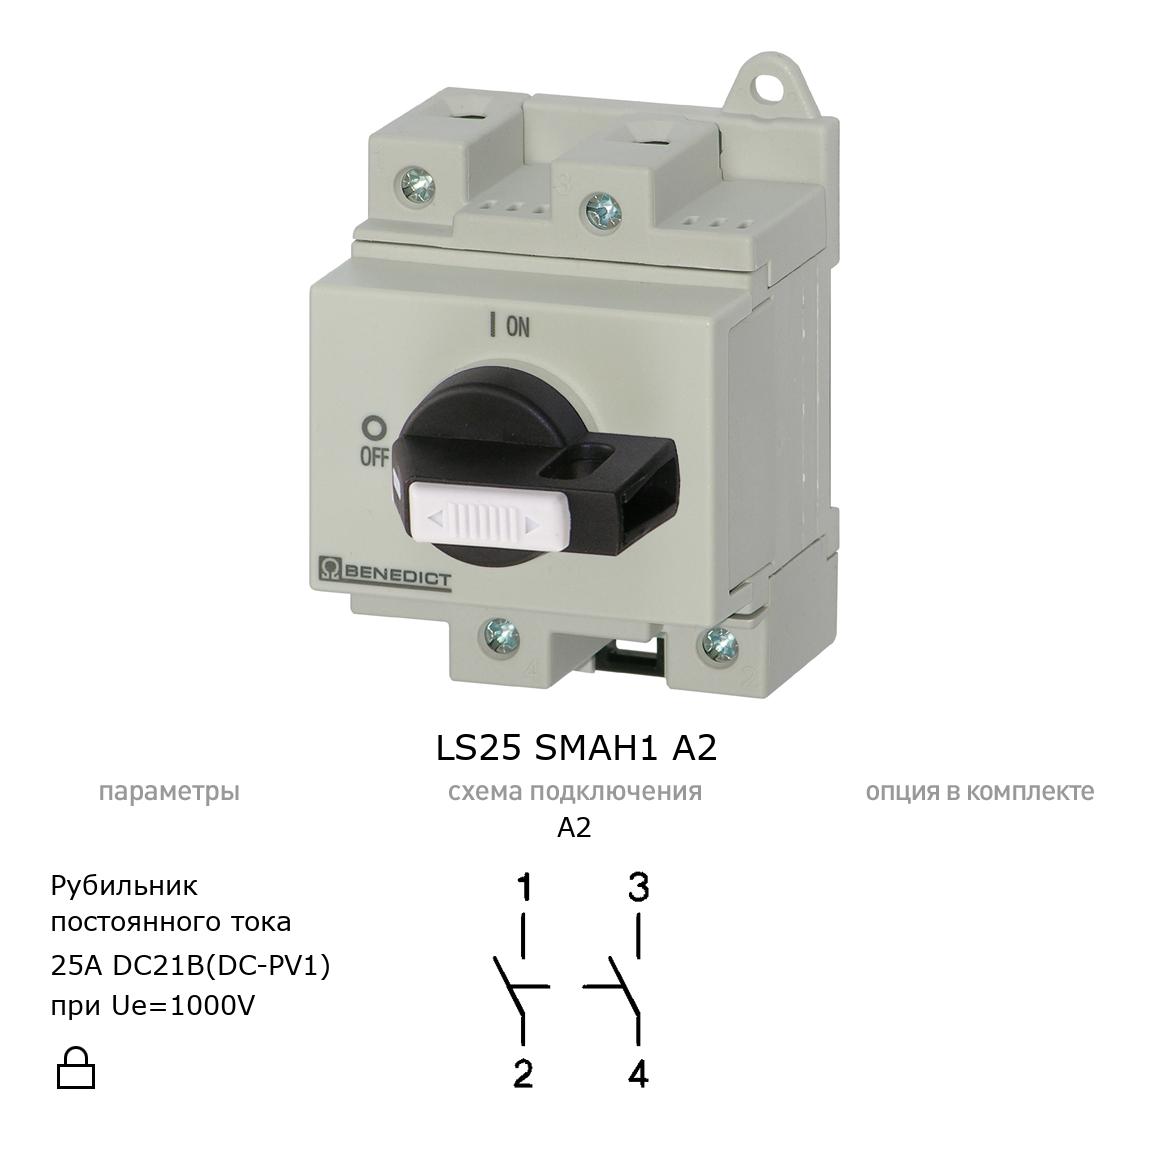 Выключатель нагрузки / рубильник для постоянного тока (DC) LS25 SMAH1 A2 BENEDICT